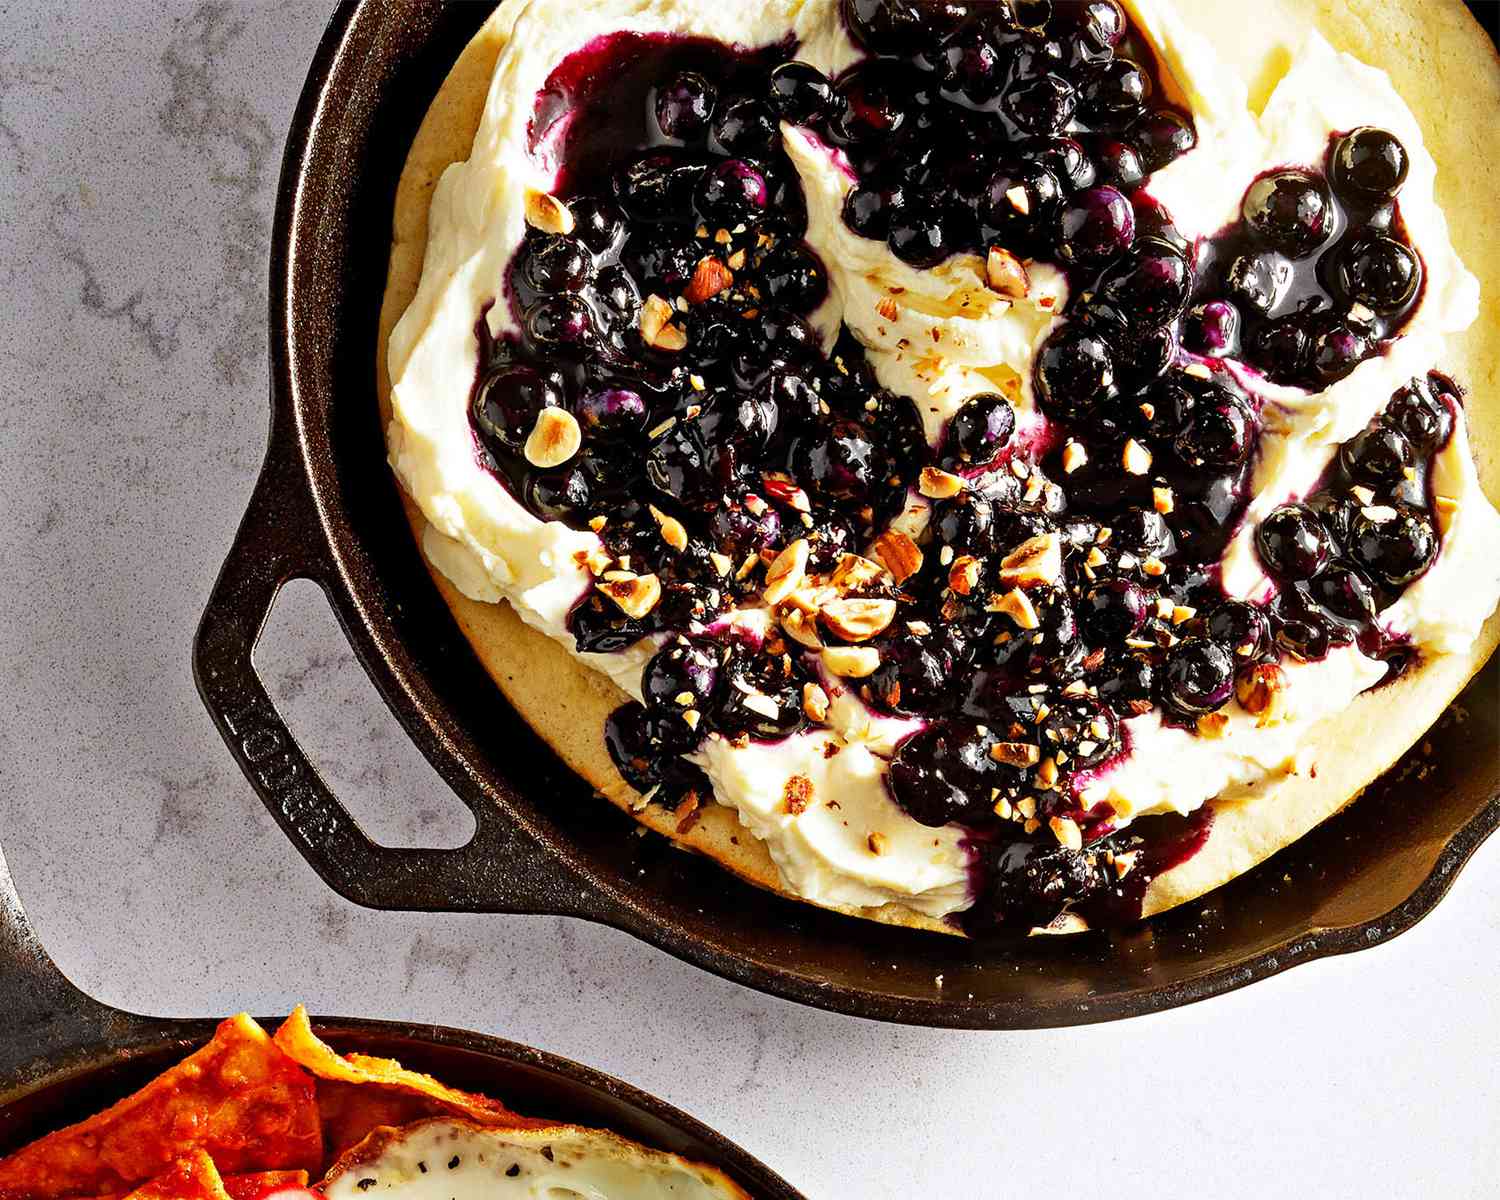 Ricotta Hotcake with Lemon Cream, Blueberry Syrup and Hazelnuts